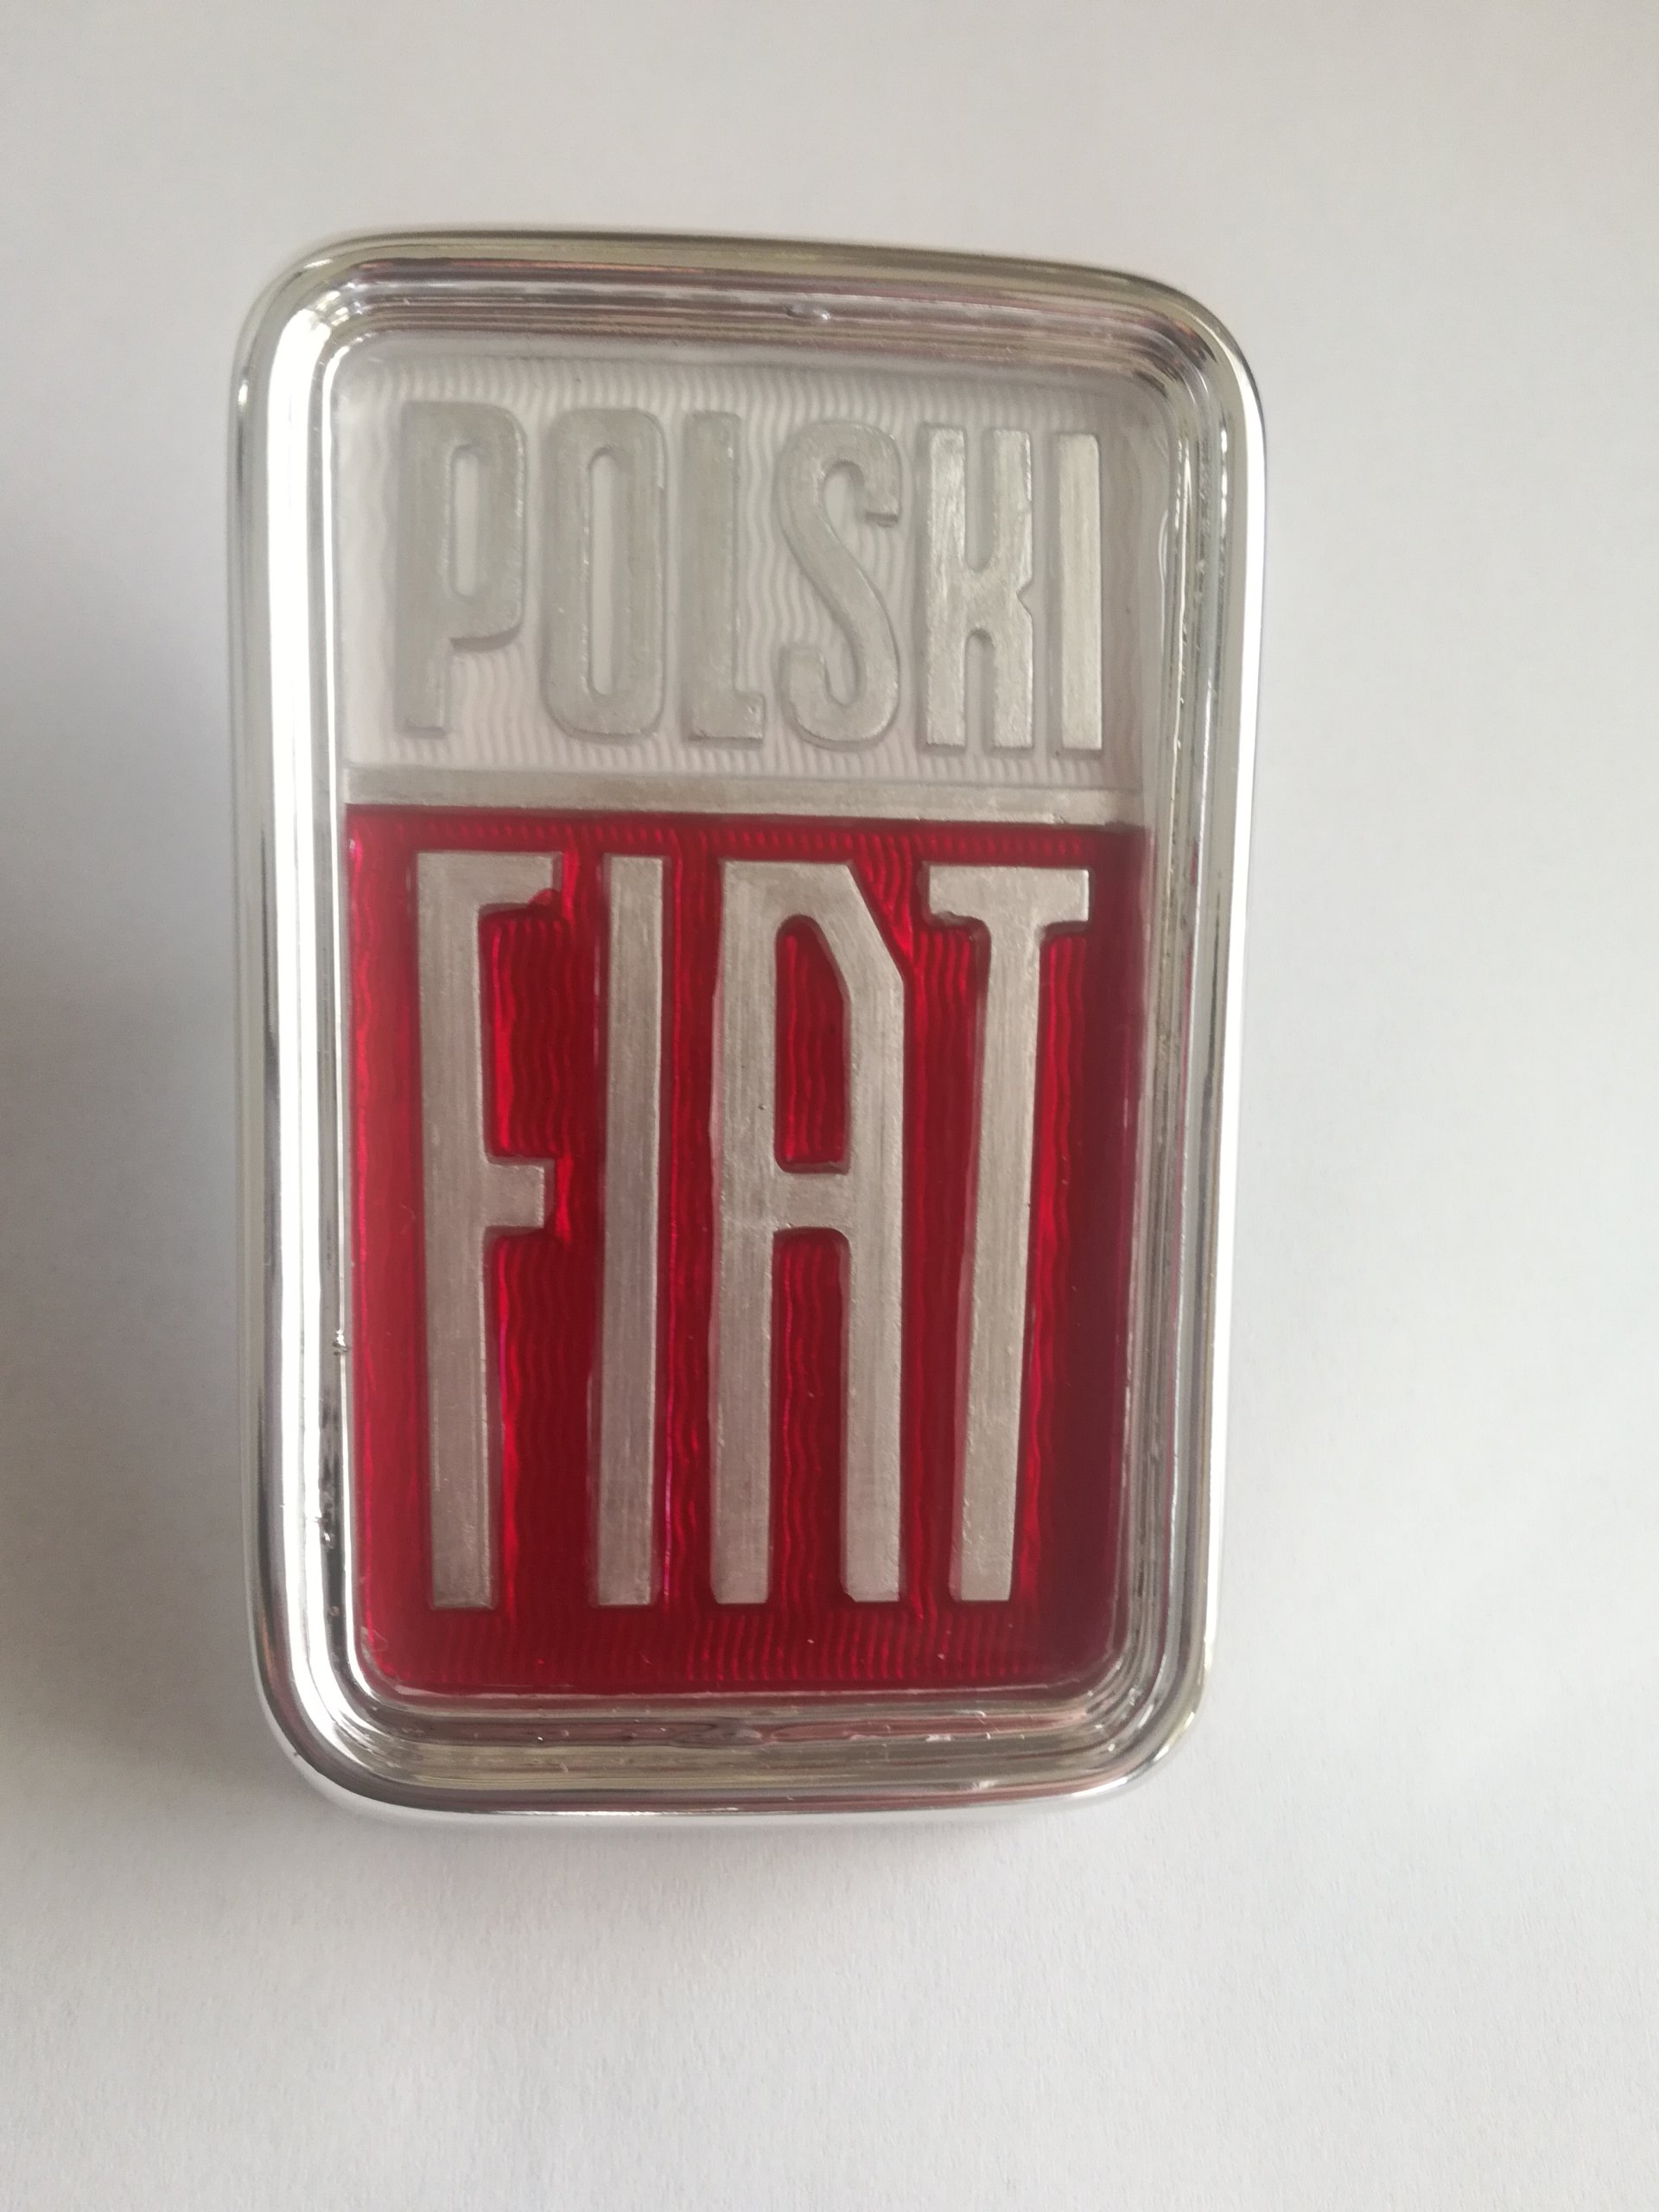 Znaczek emblemat Polski Fiat 125p 7200798315 oficjalne